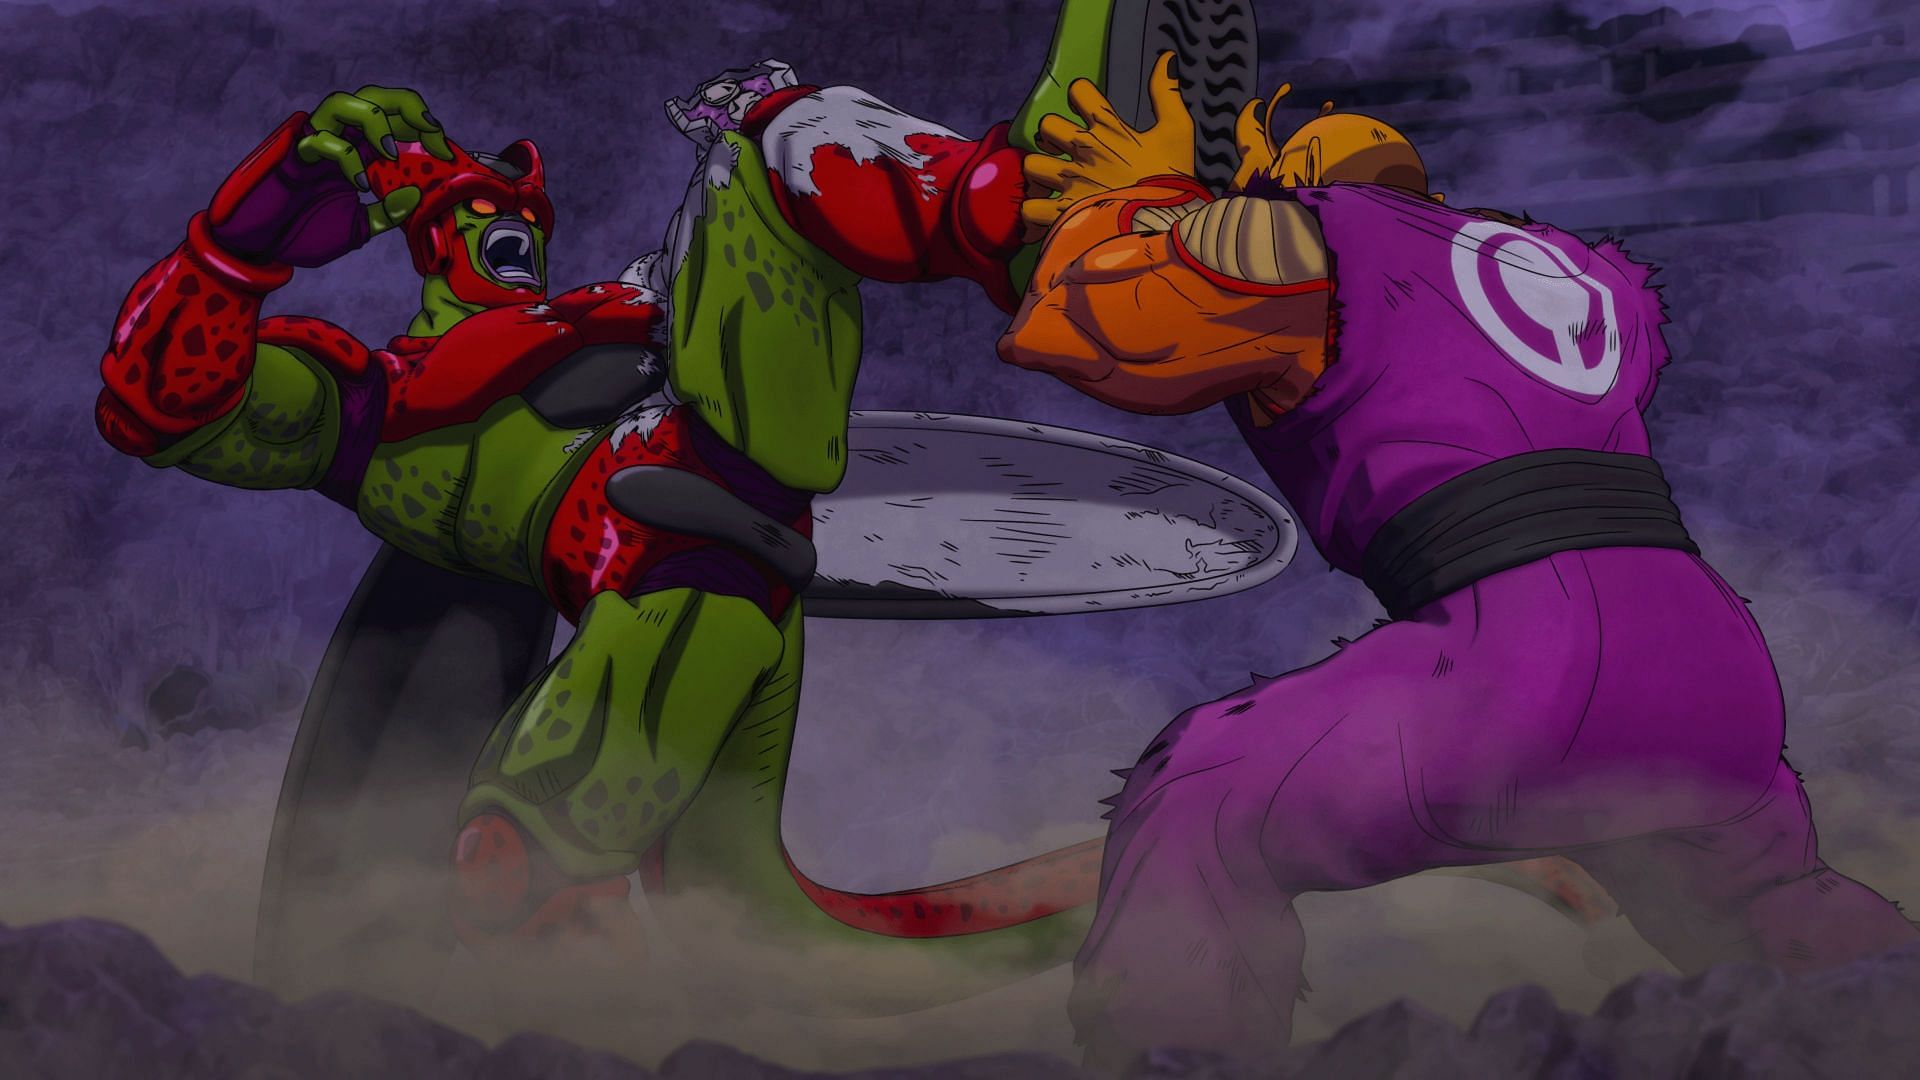 Cell Max fighting Orange Piccolo (Image via Toei Animation)